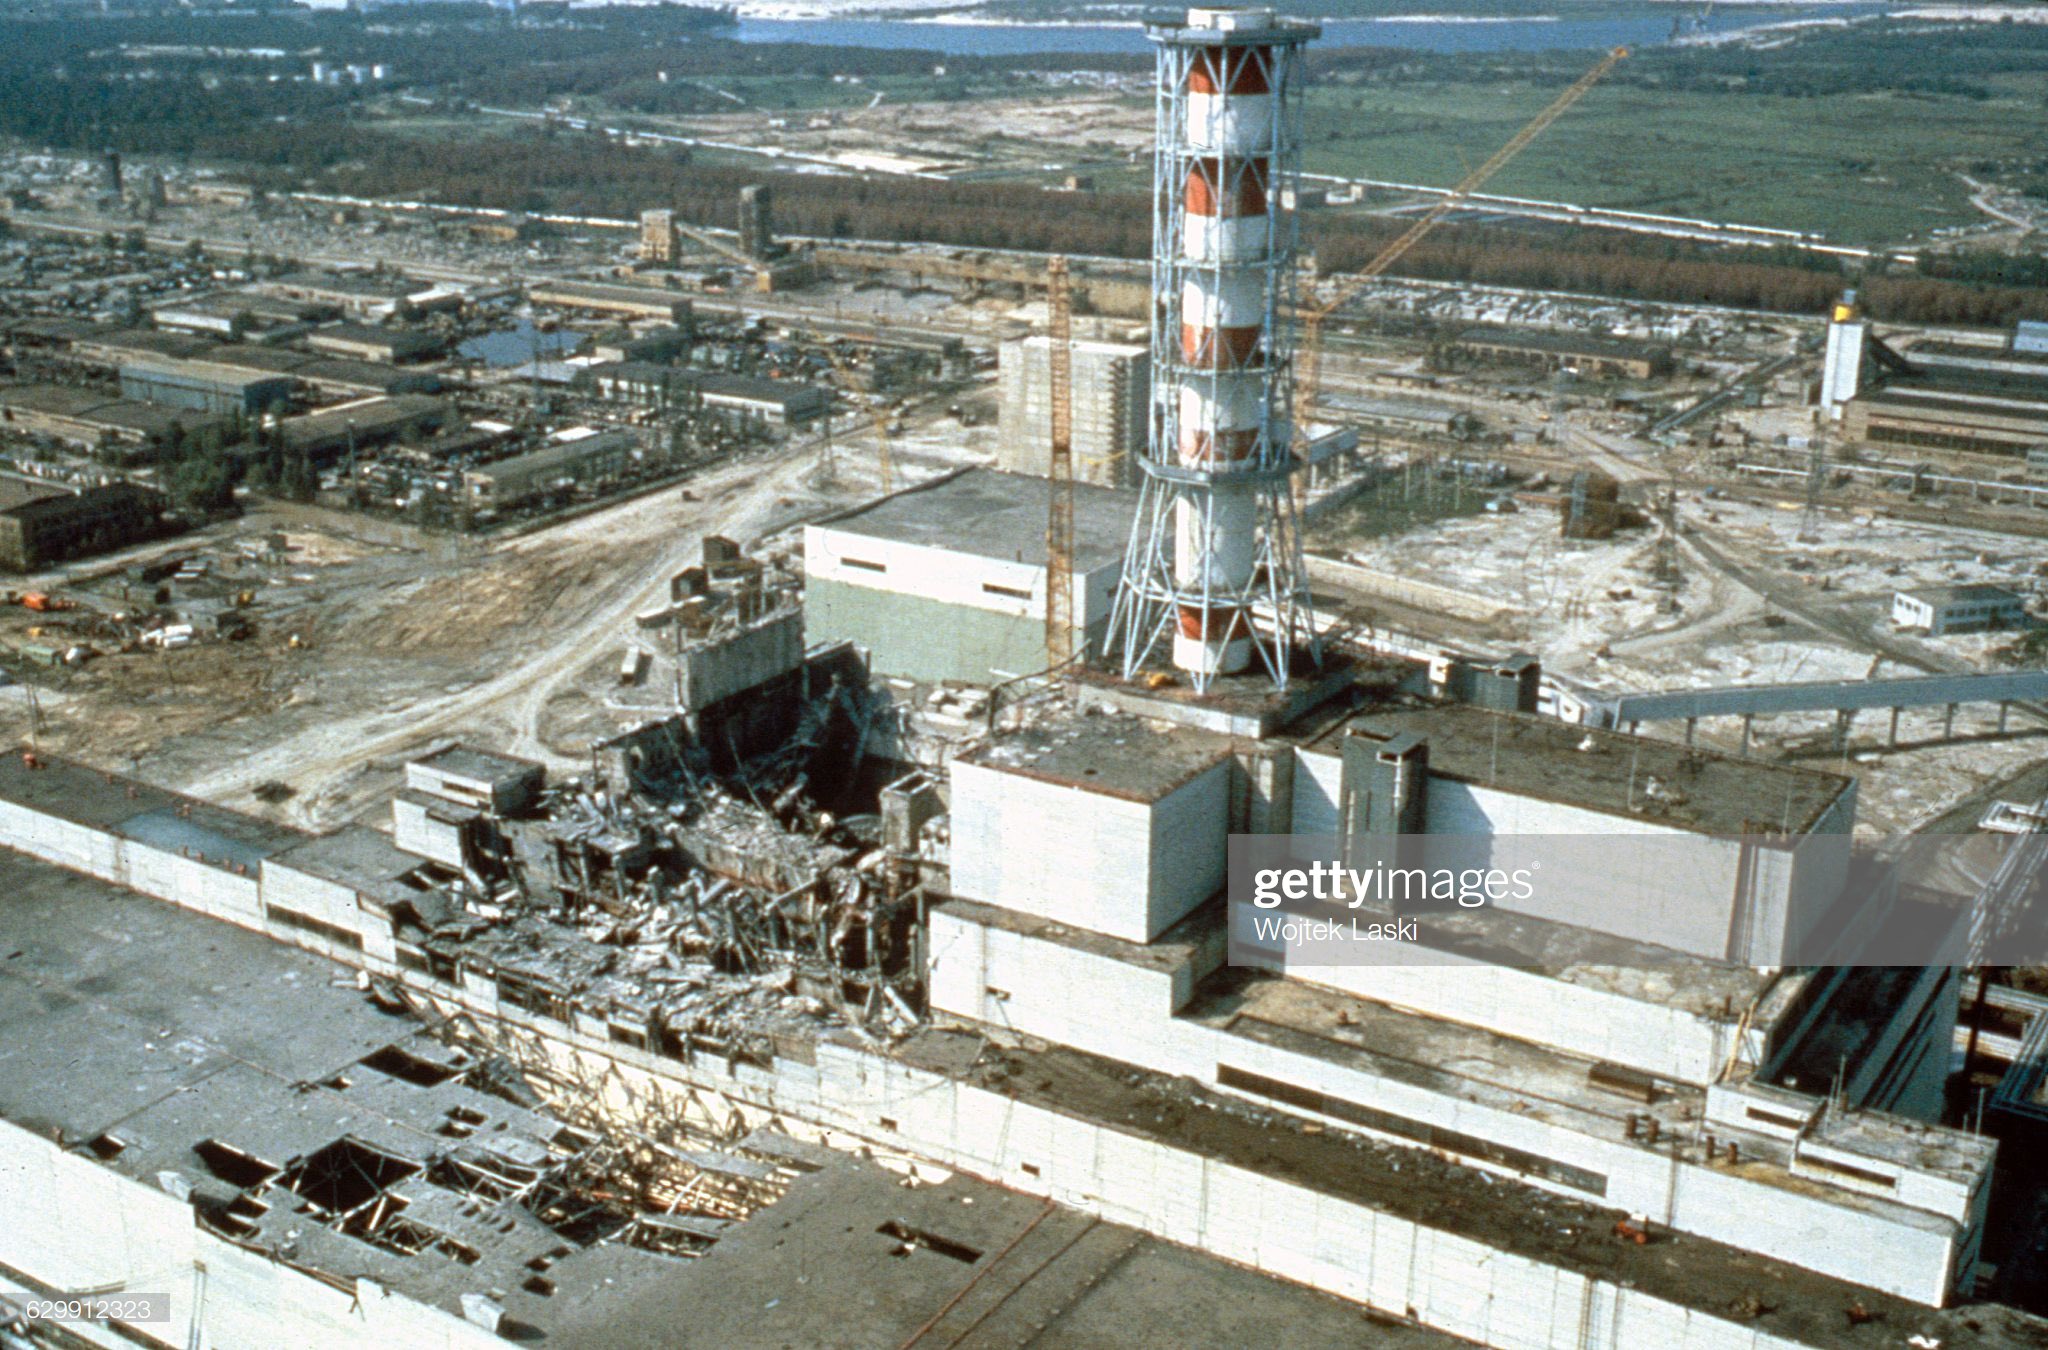 Nhà máy điện hạt nhân Chernobyl vào tháng 5/1986, vài tuần sau thảm họa. Ảnh: gettyimages.